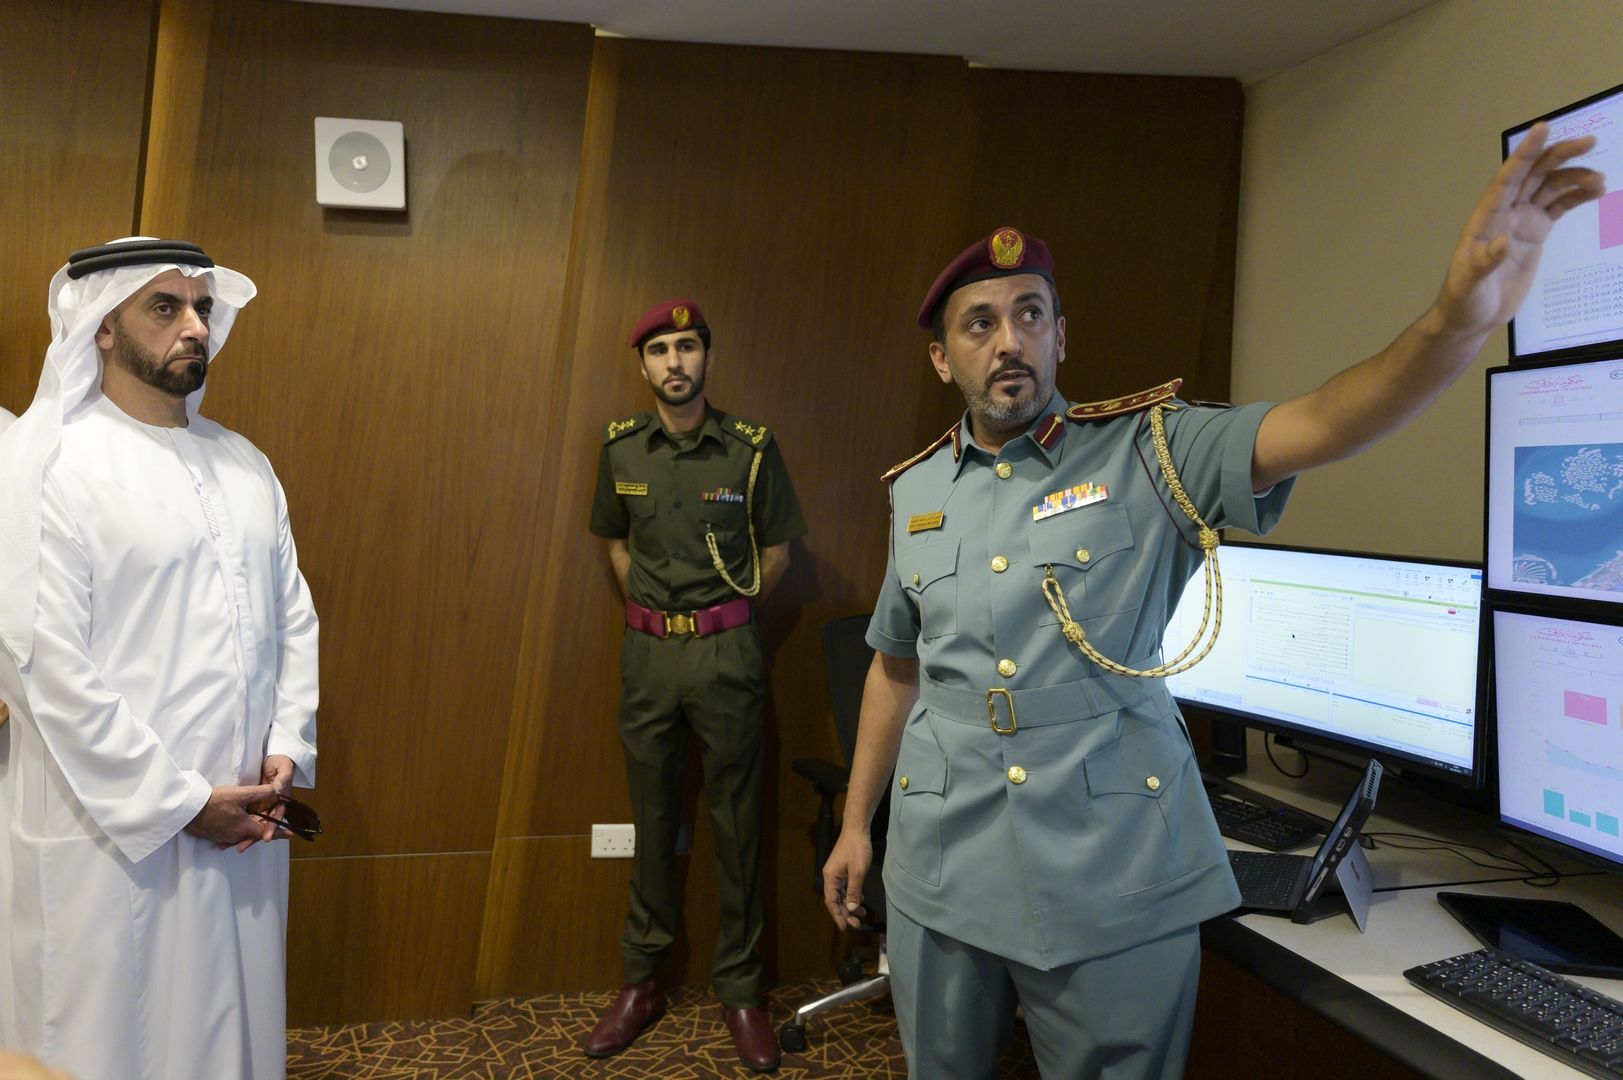 سيف بن زايد يفتتح غرفة جاهزية الدفاع المدني في دبي القائمة على الذكاء الاصطناعي